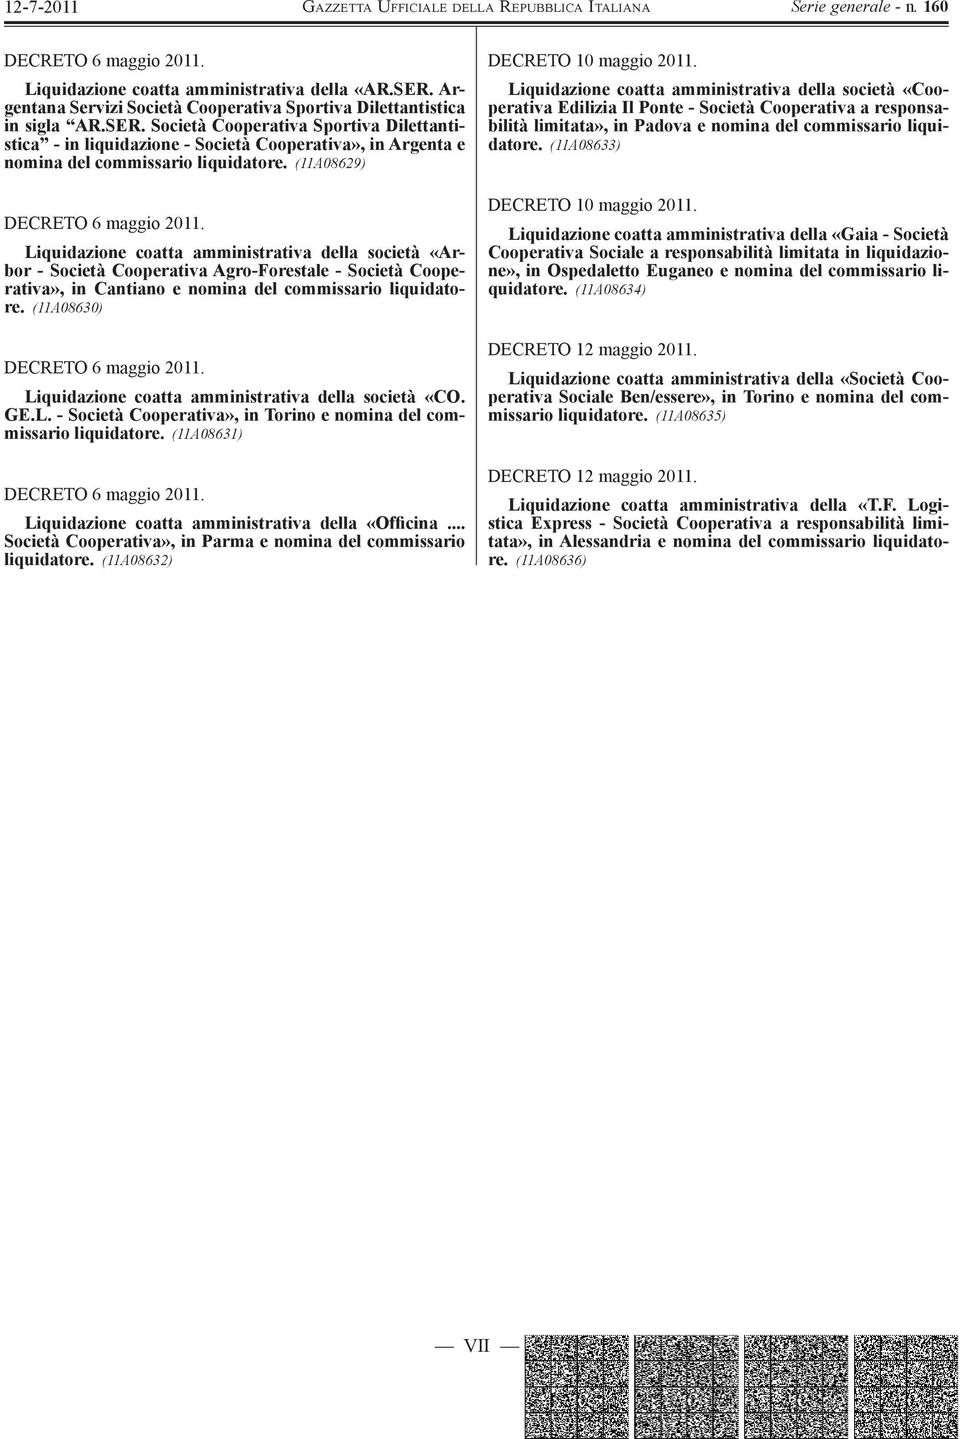 (11A08630) Liquidazione coatta amministrativa della società «CO. GE.L. - Società Cooperativa», in Torino e nomina del commissario liquidatore.